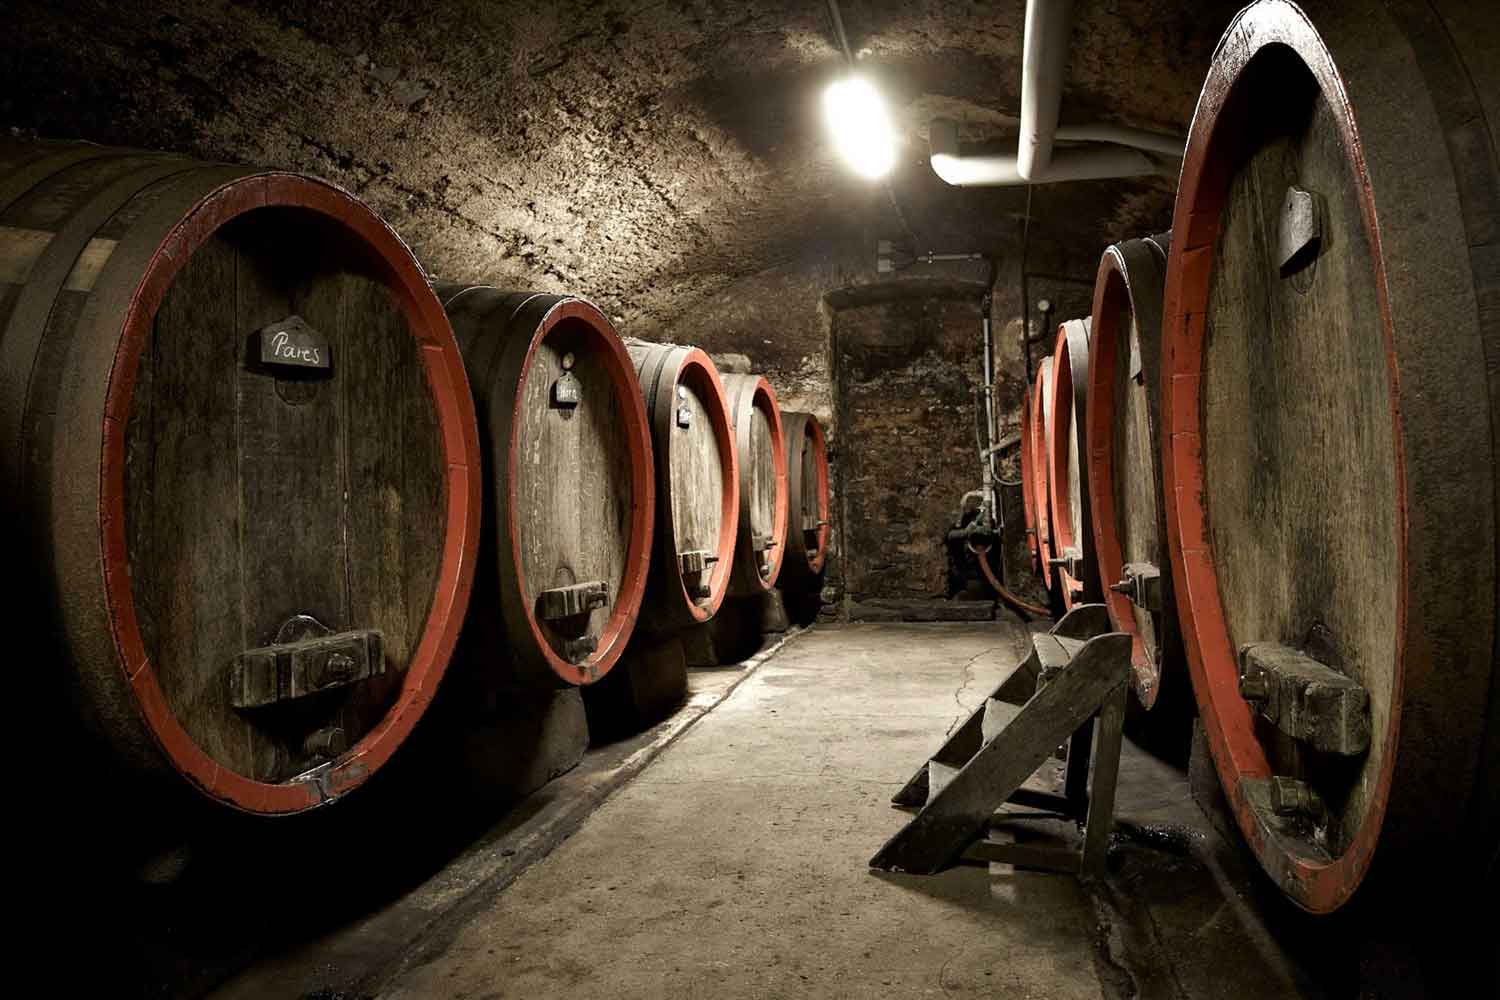 Kolonne Nulls Partner- Julius Wasem, hat sich dem Weinbau schon früh gewidmet, erstmals nachweislich im Jahr 1726